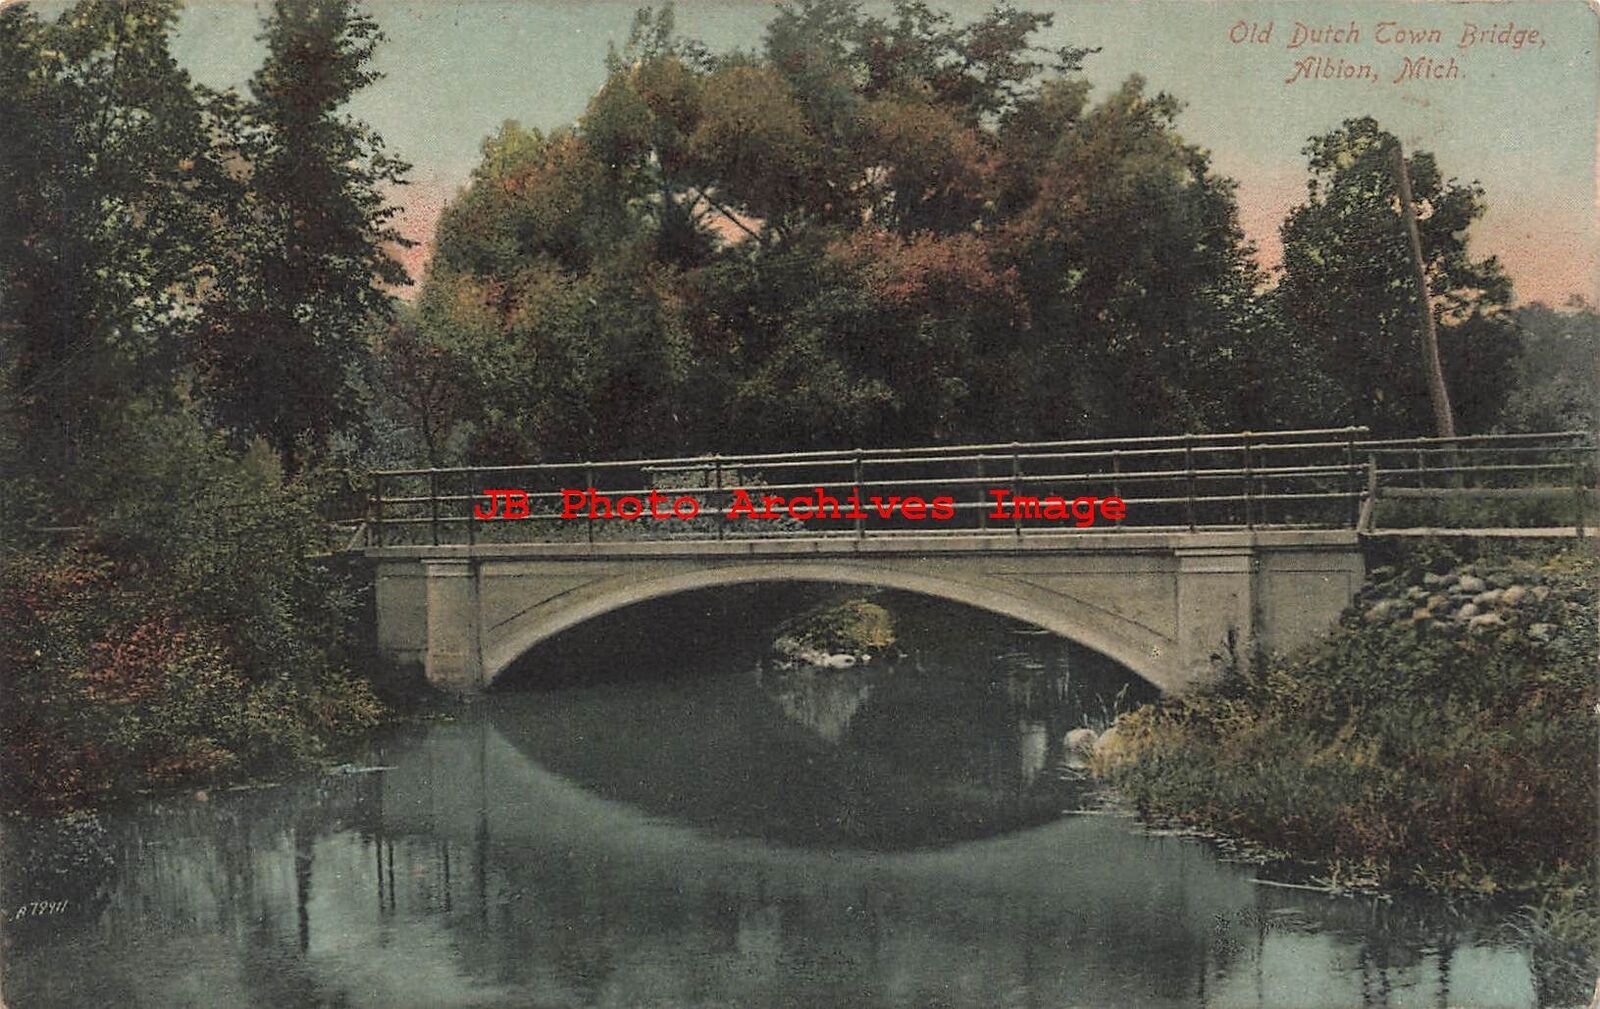 MI, Albion, Michigan, Old Dutch Town Bridge, 1910 PM, Schmelzer Pub No 4